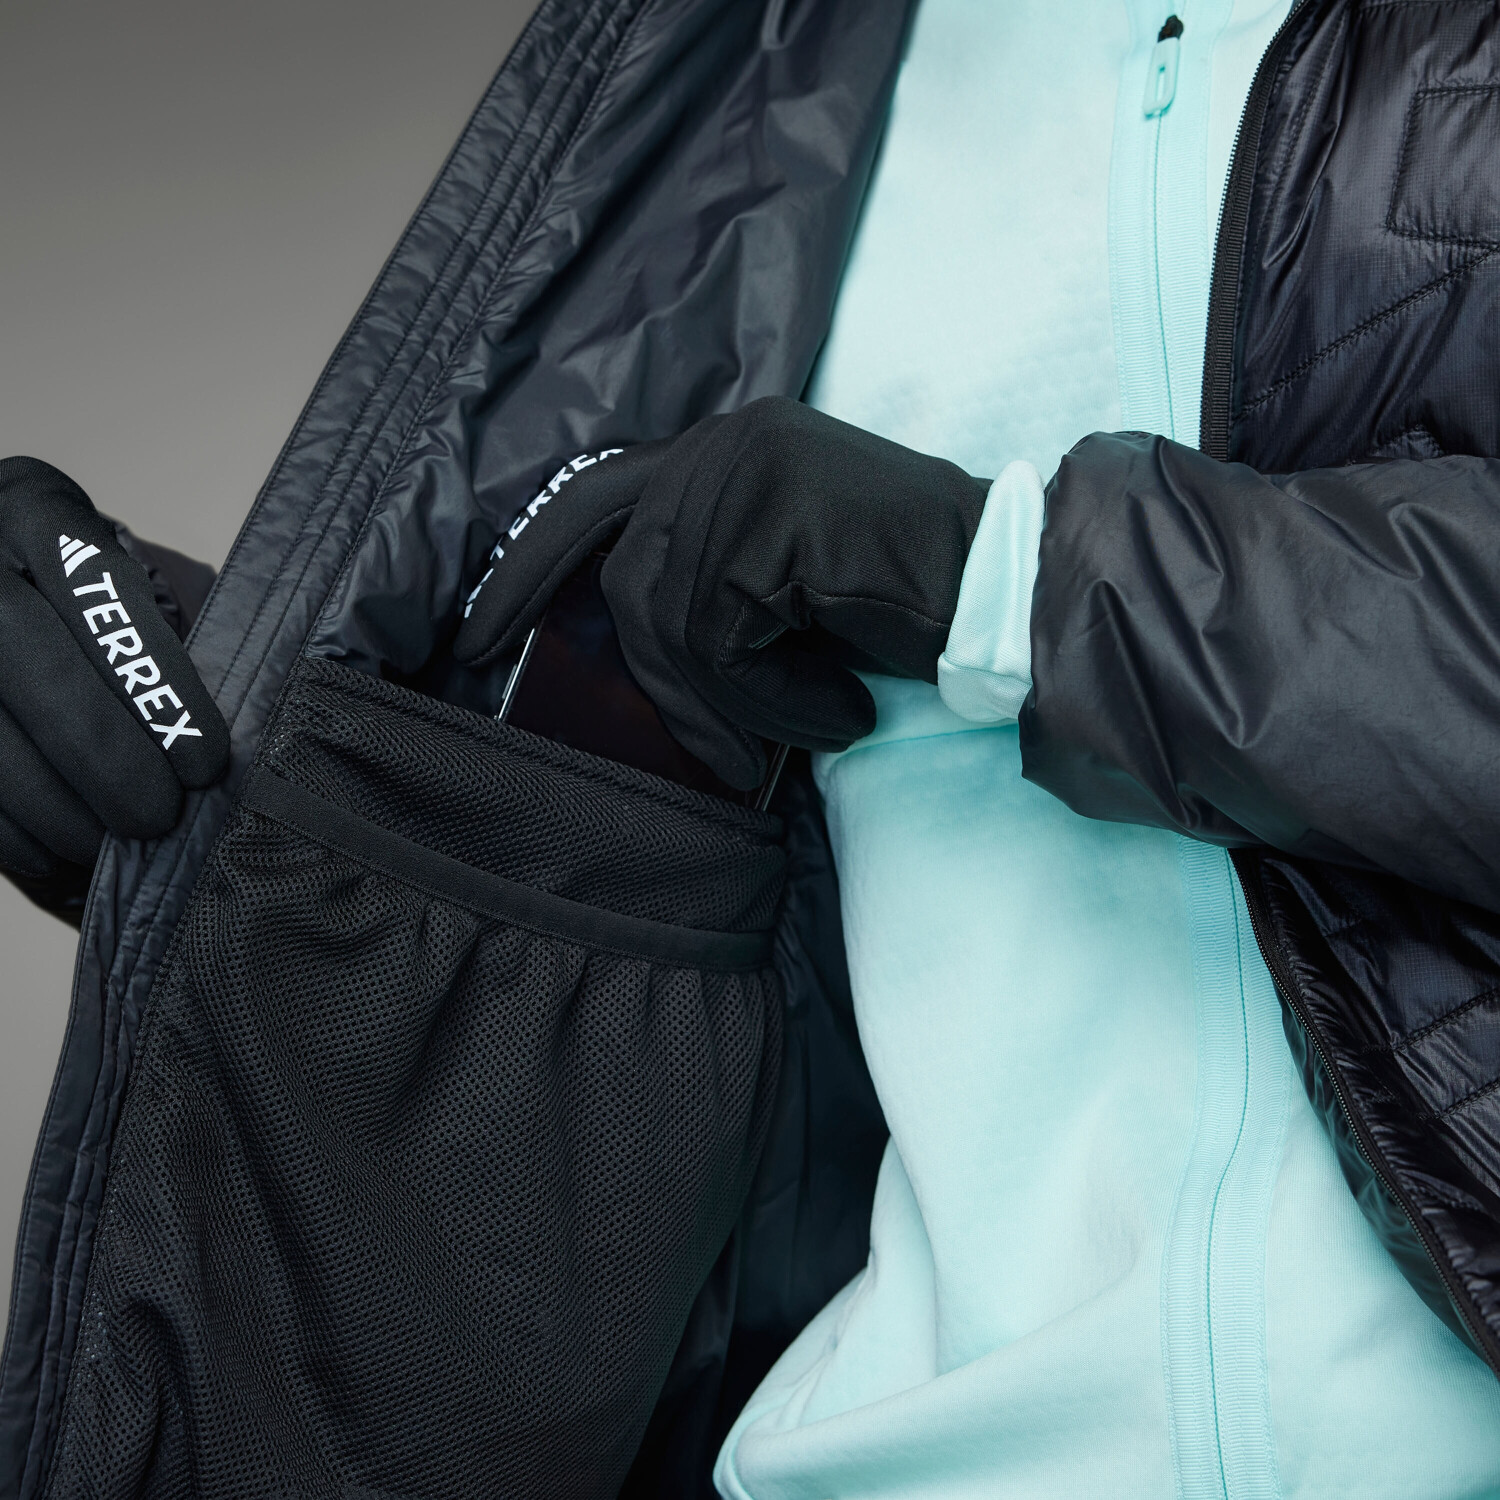 Adidas Woman 129,59 € (IB4183) Xperior ab black Varilite Preisvergleich Terrex PrimaLoft bei Jacket Hooded 